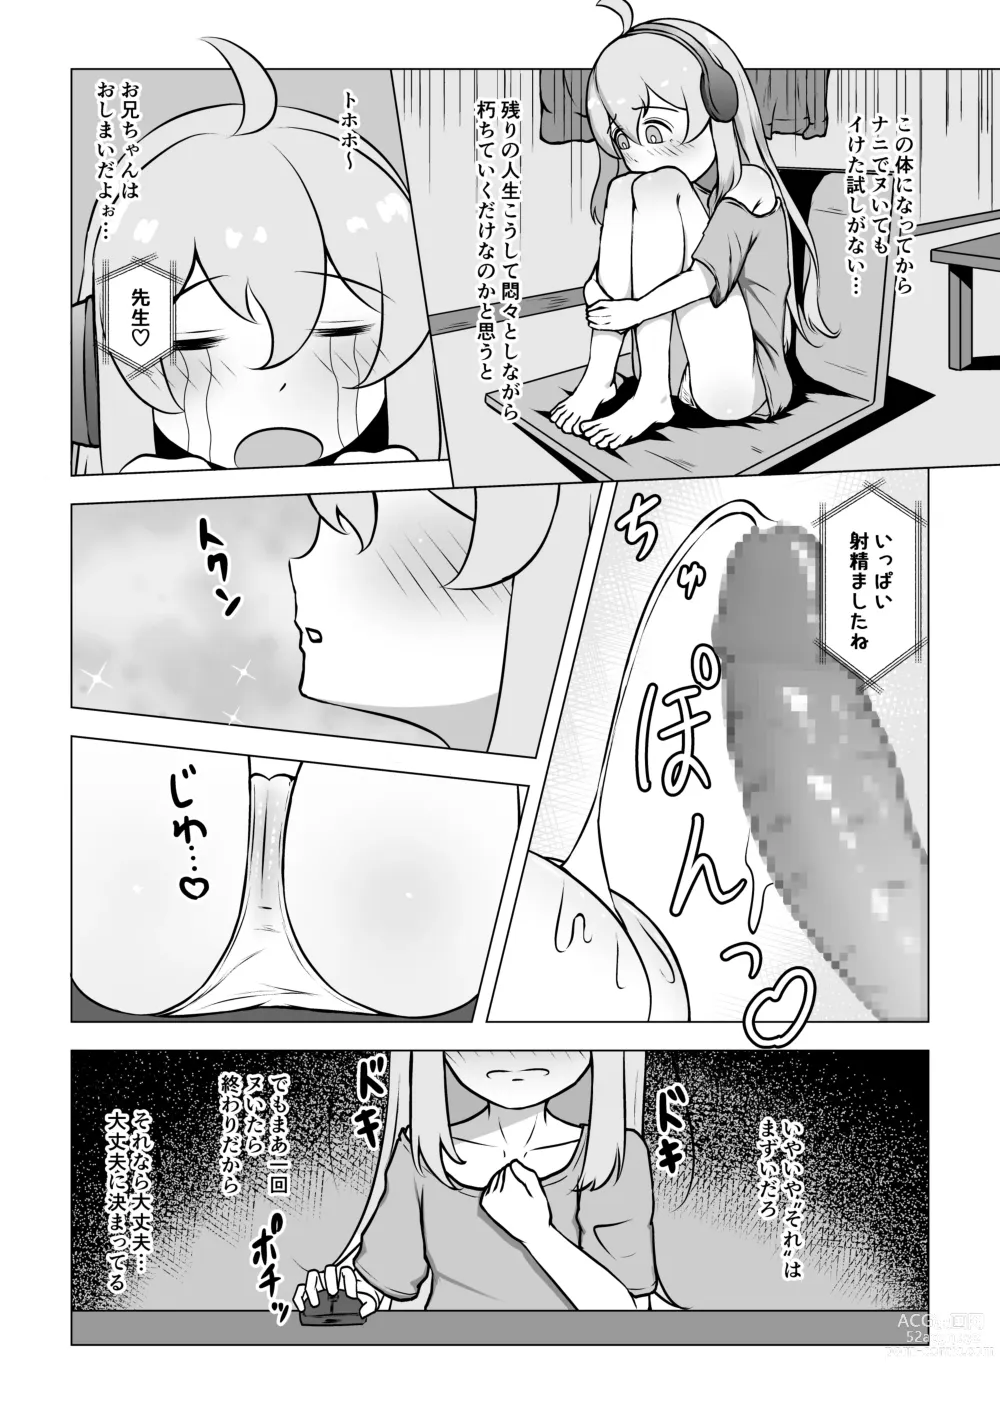 Page 2 of doujinshi Onii-chan, Owaru